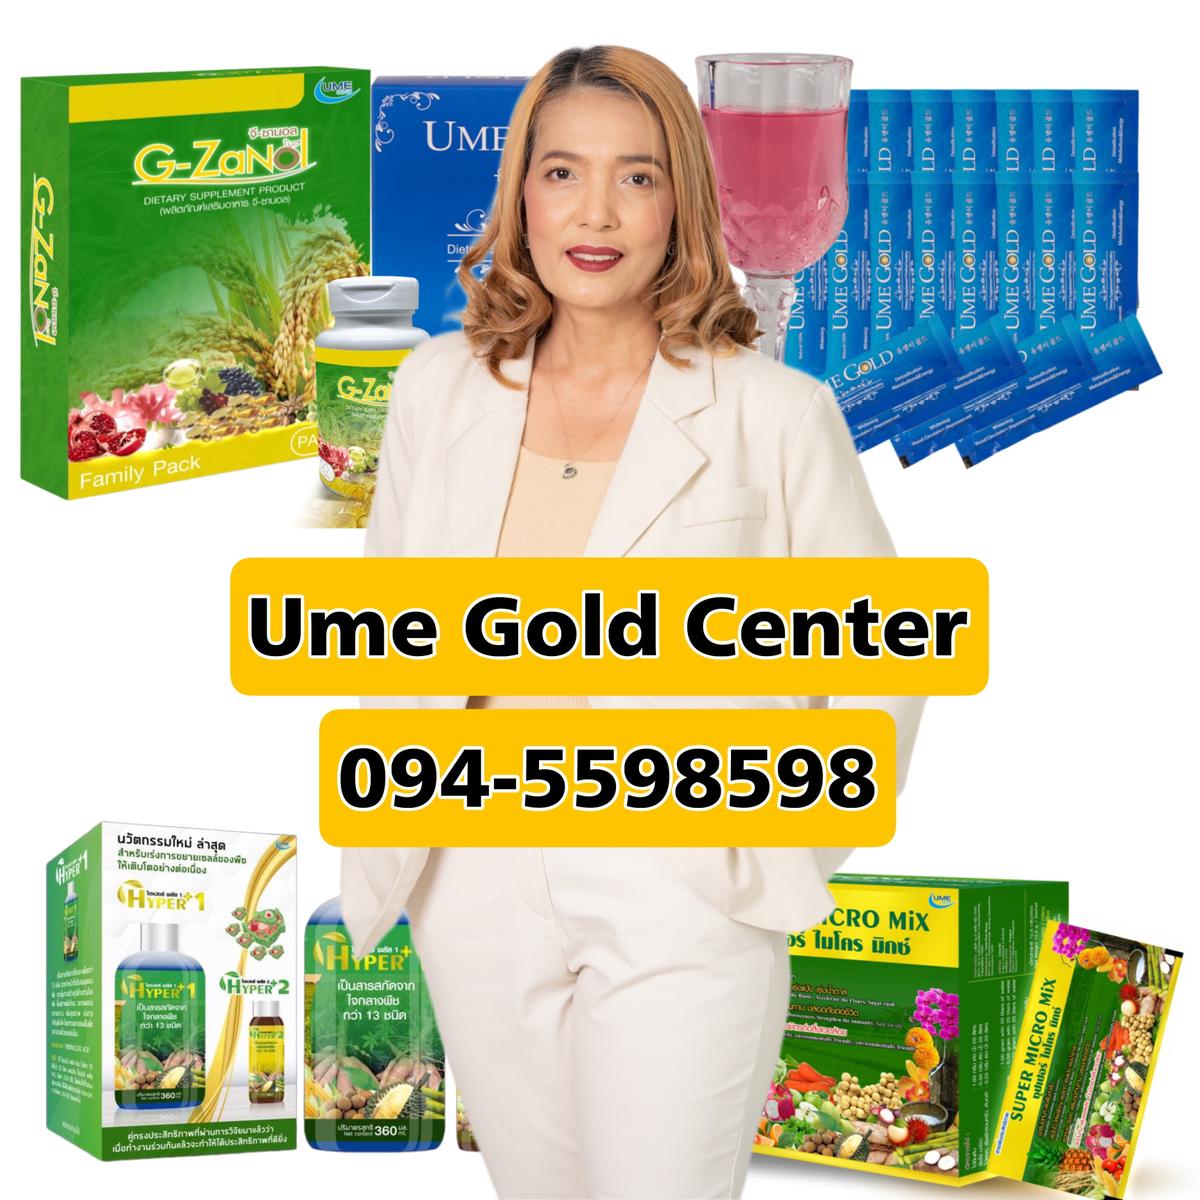 Ume Gold Center